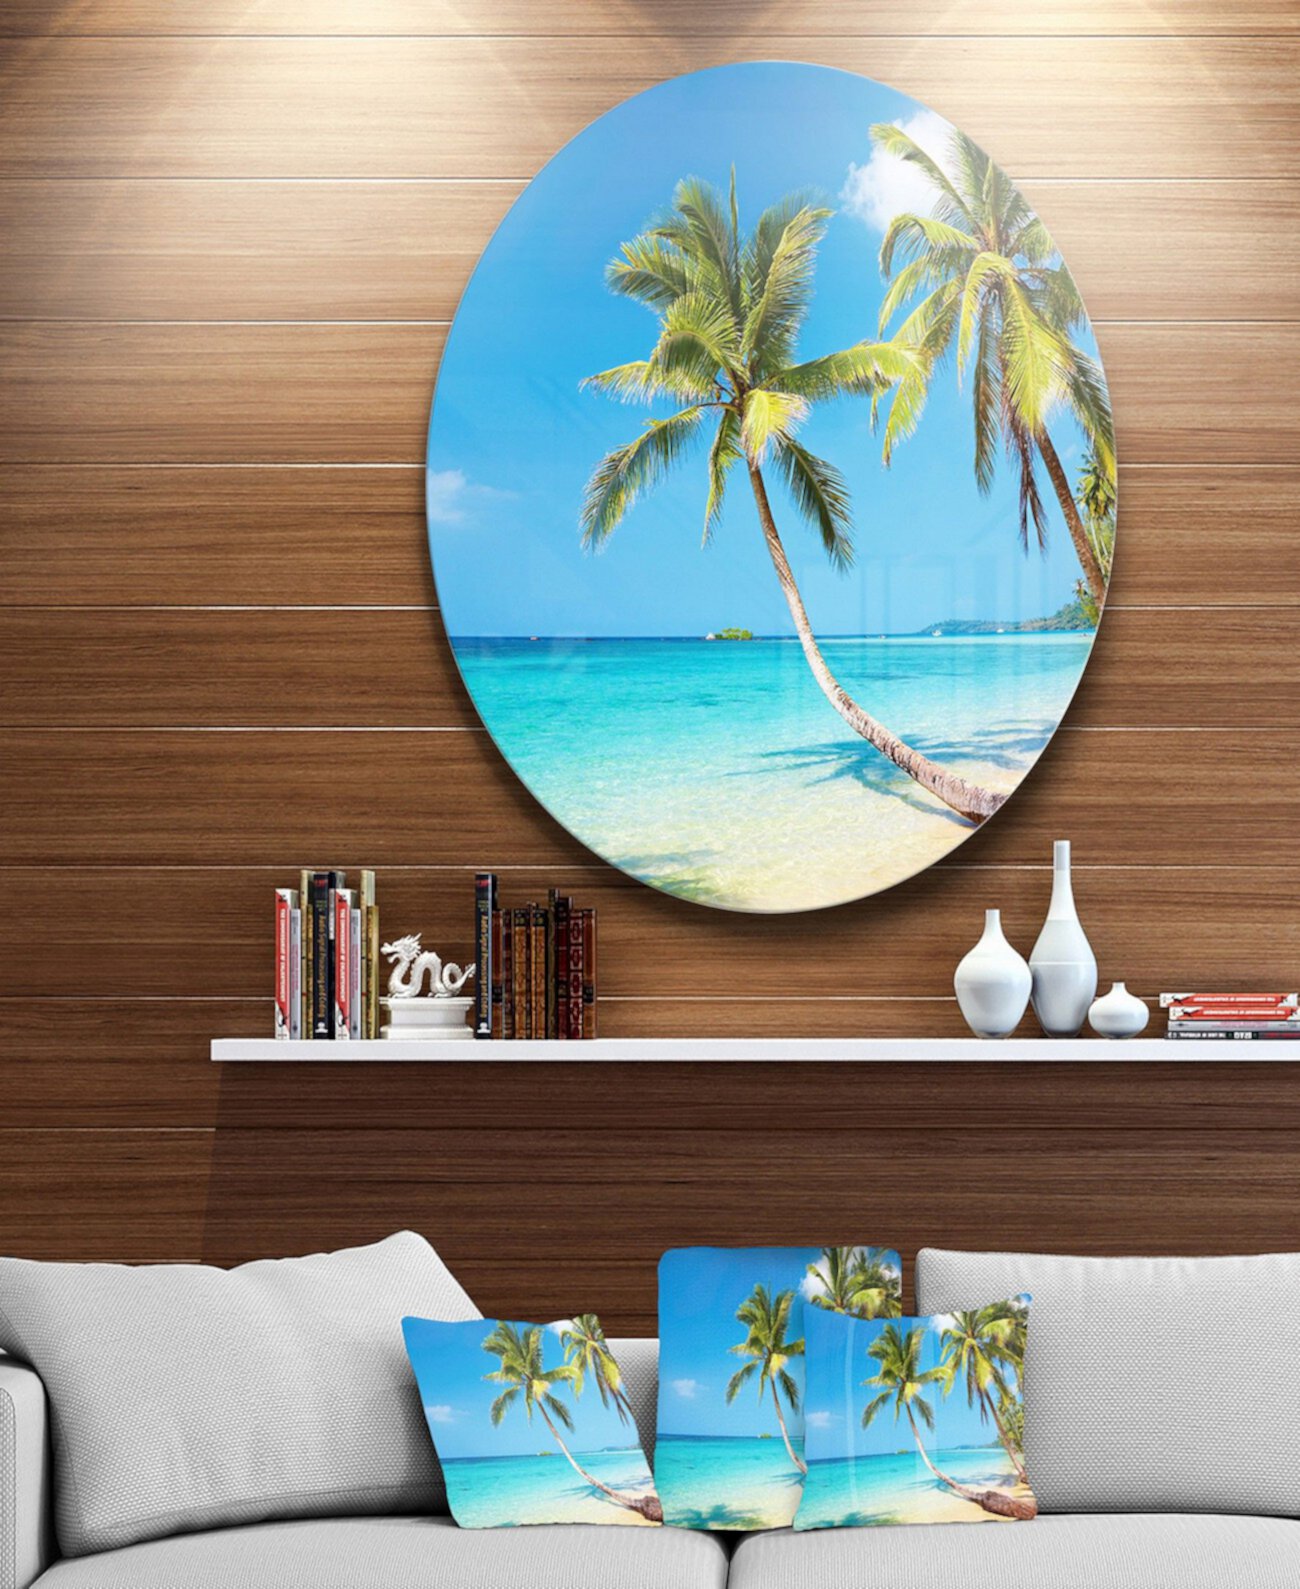 Диск для фотографий Designart 'Tropical Beach' Картины из металла в круге с морским пейзажем - 23 "x 23" Design Art